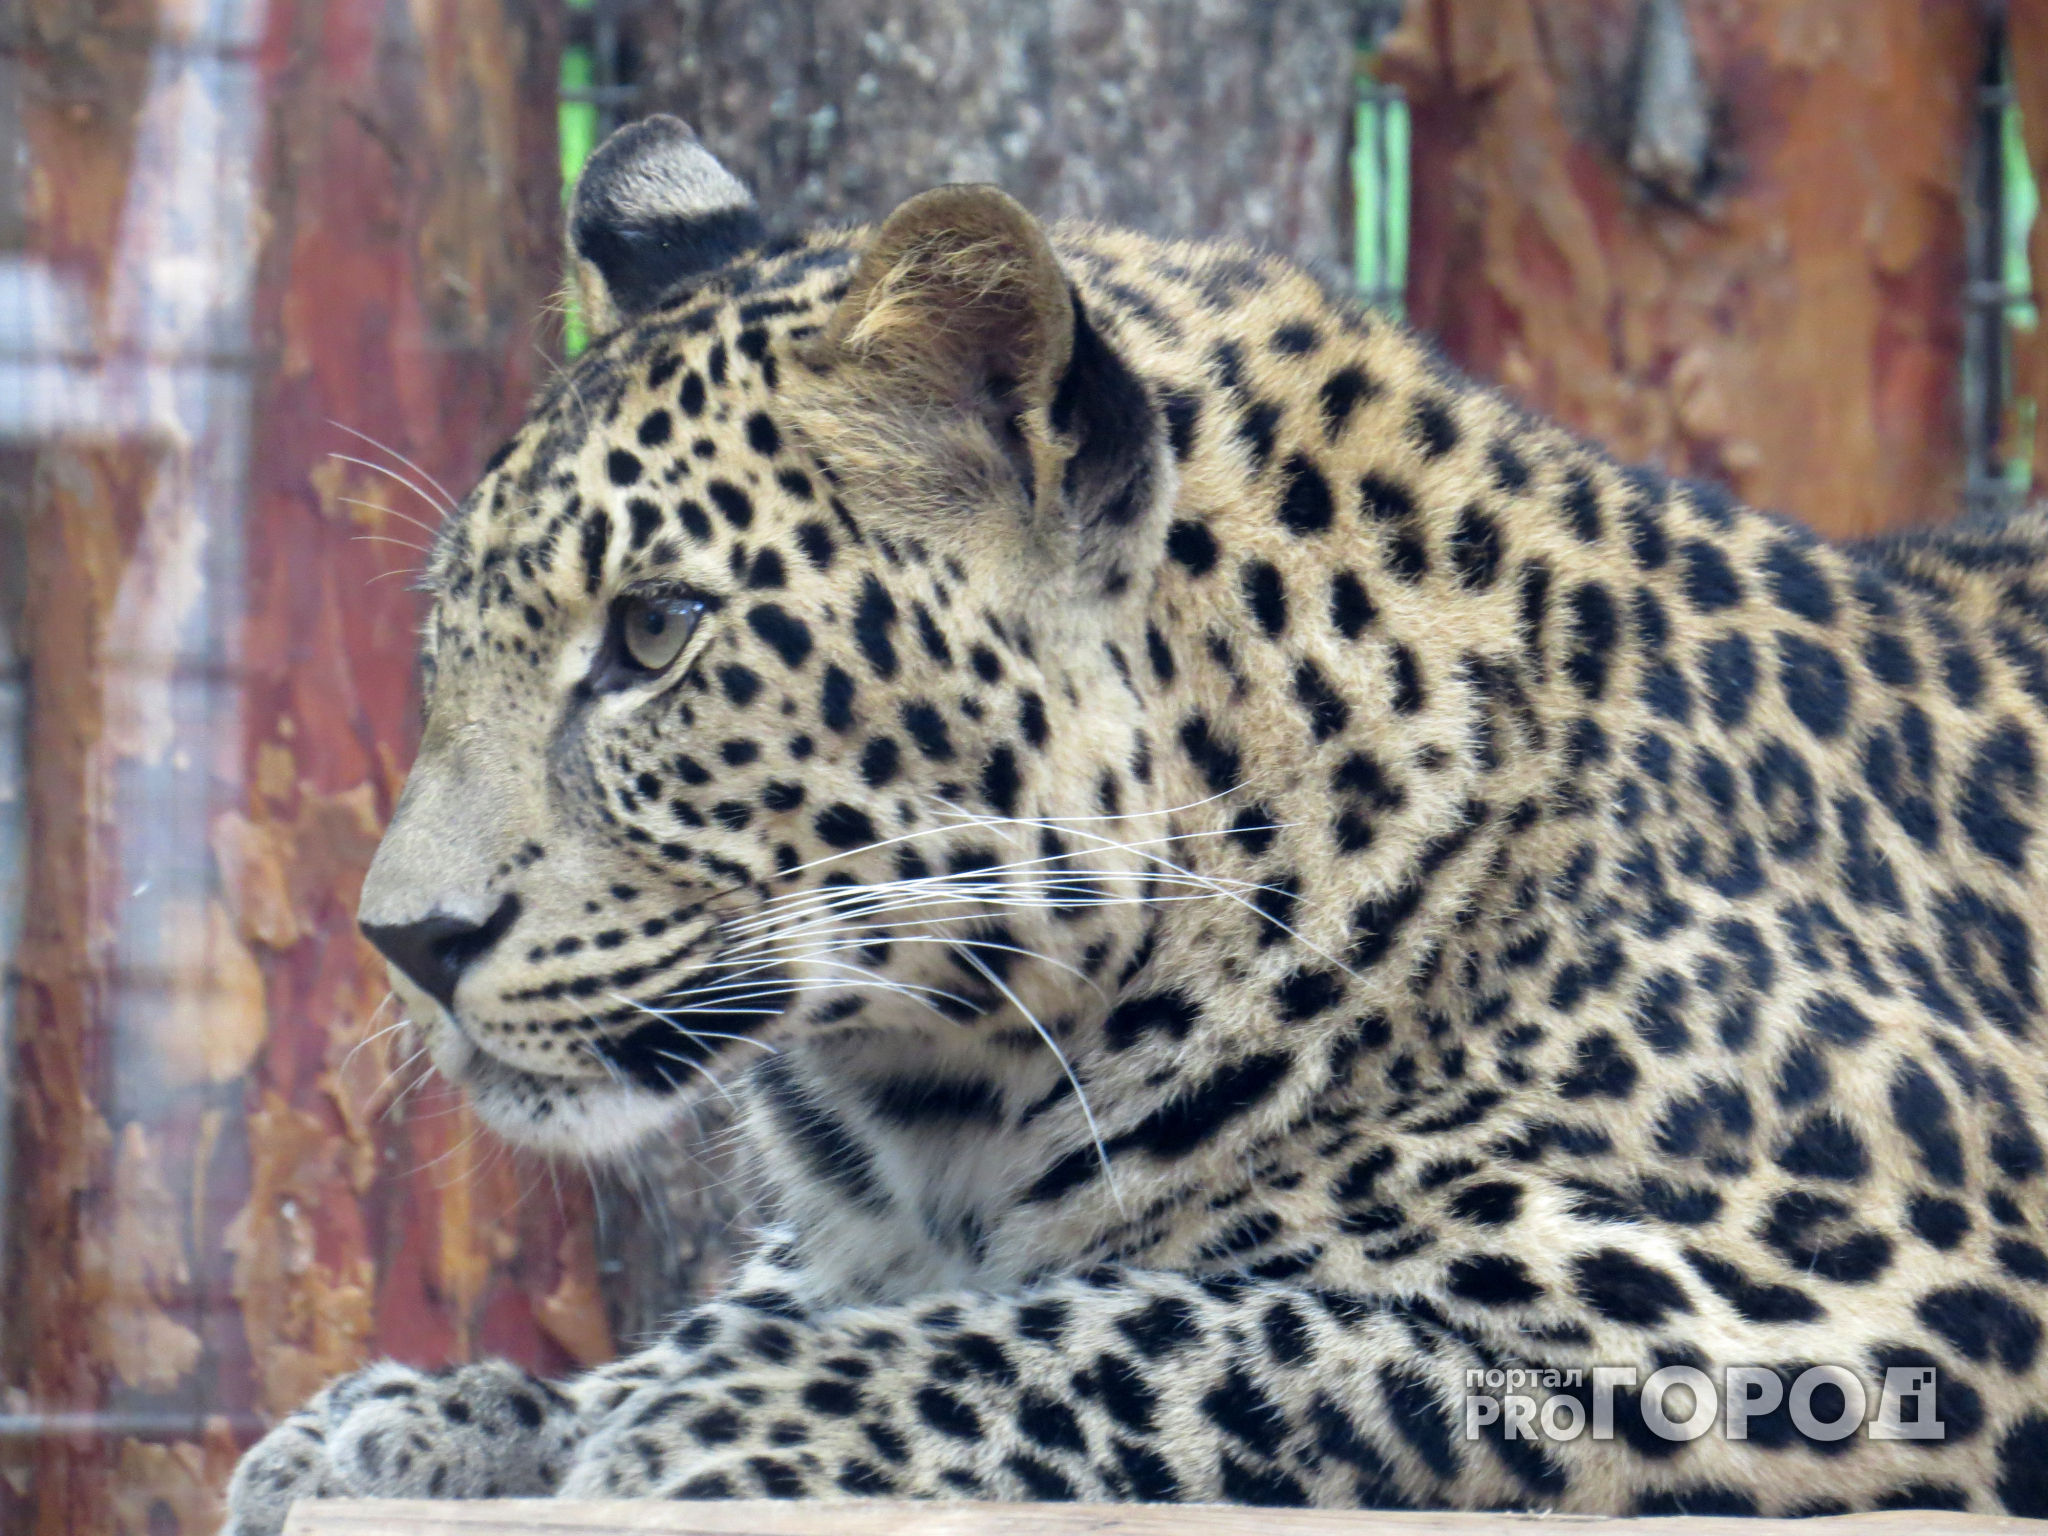 Ярославцам предлагали купить живых леопардов